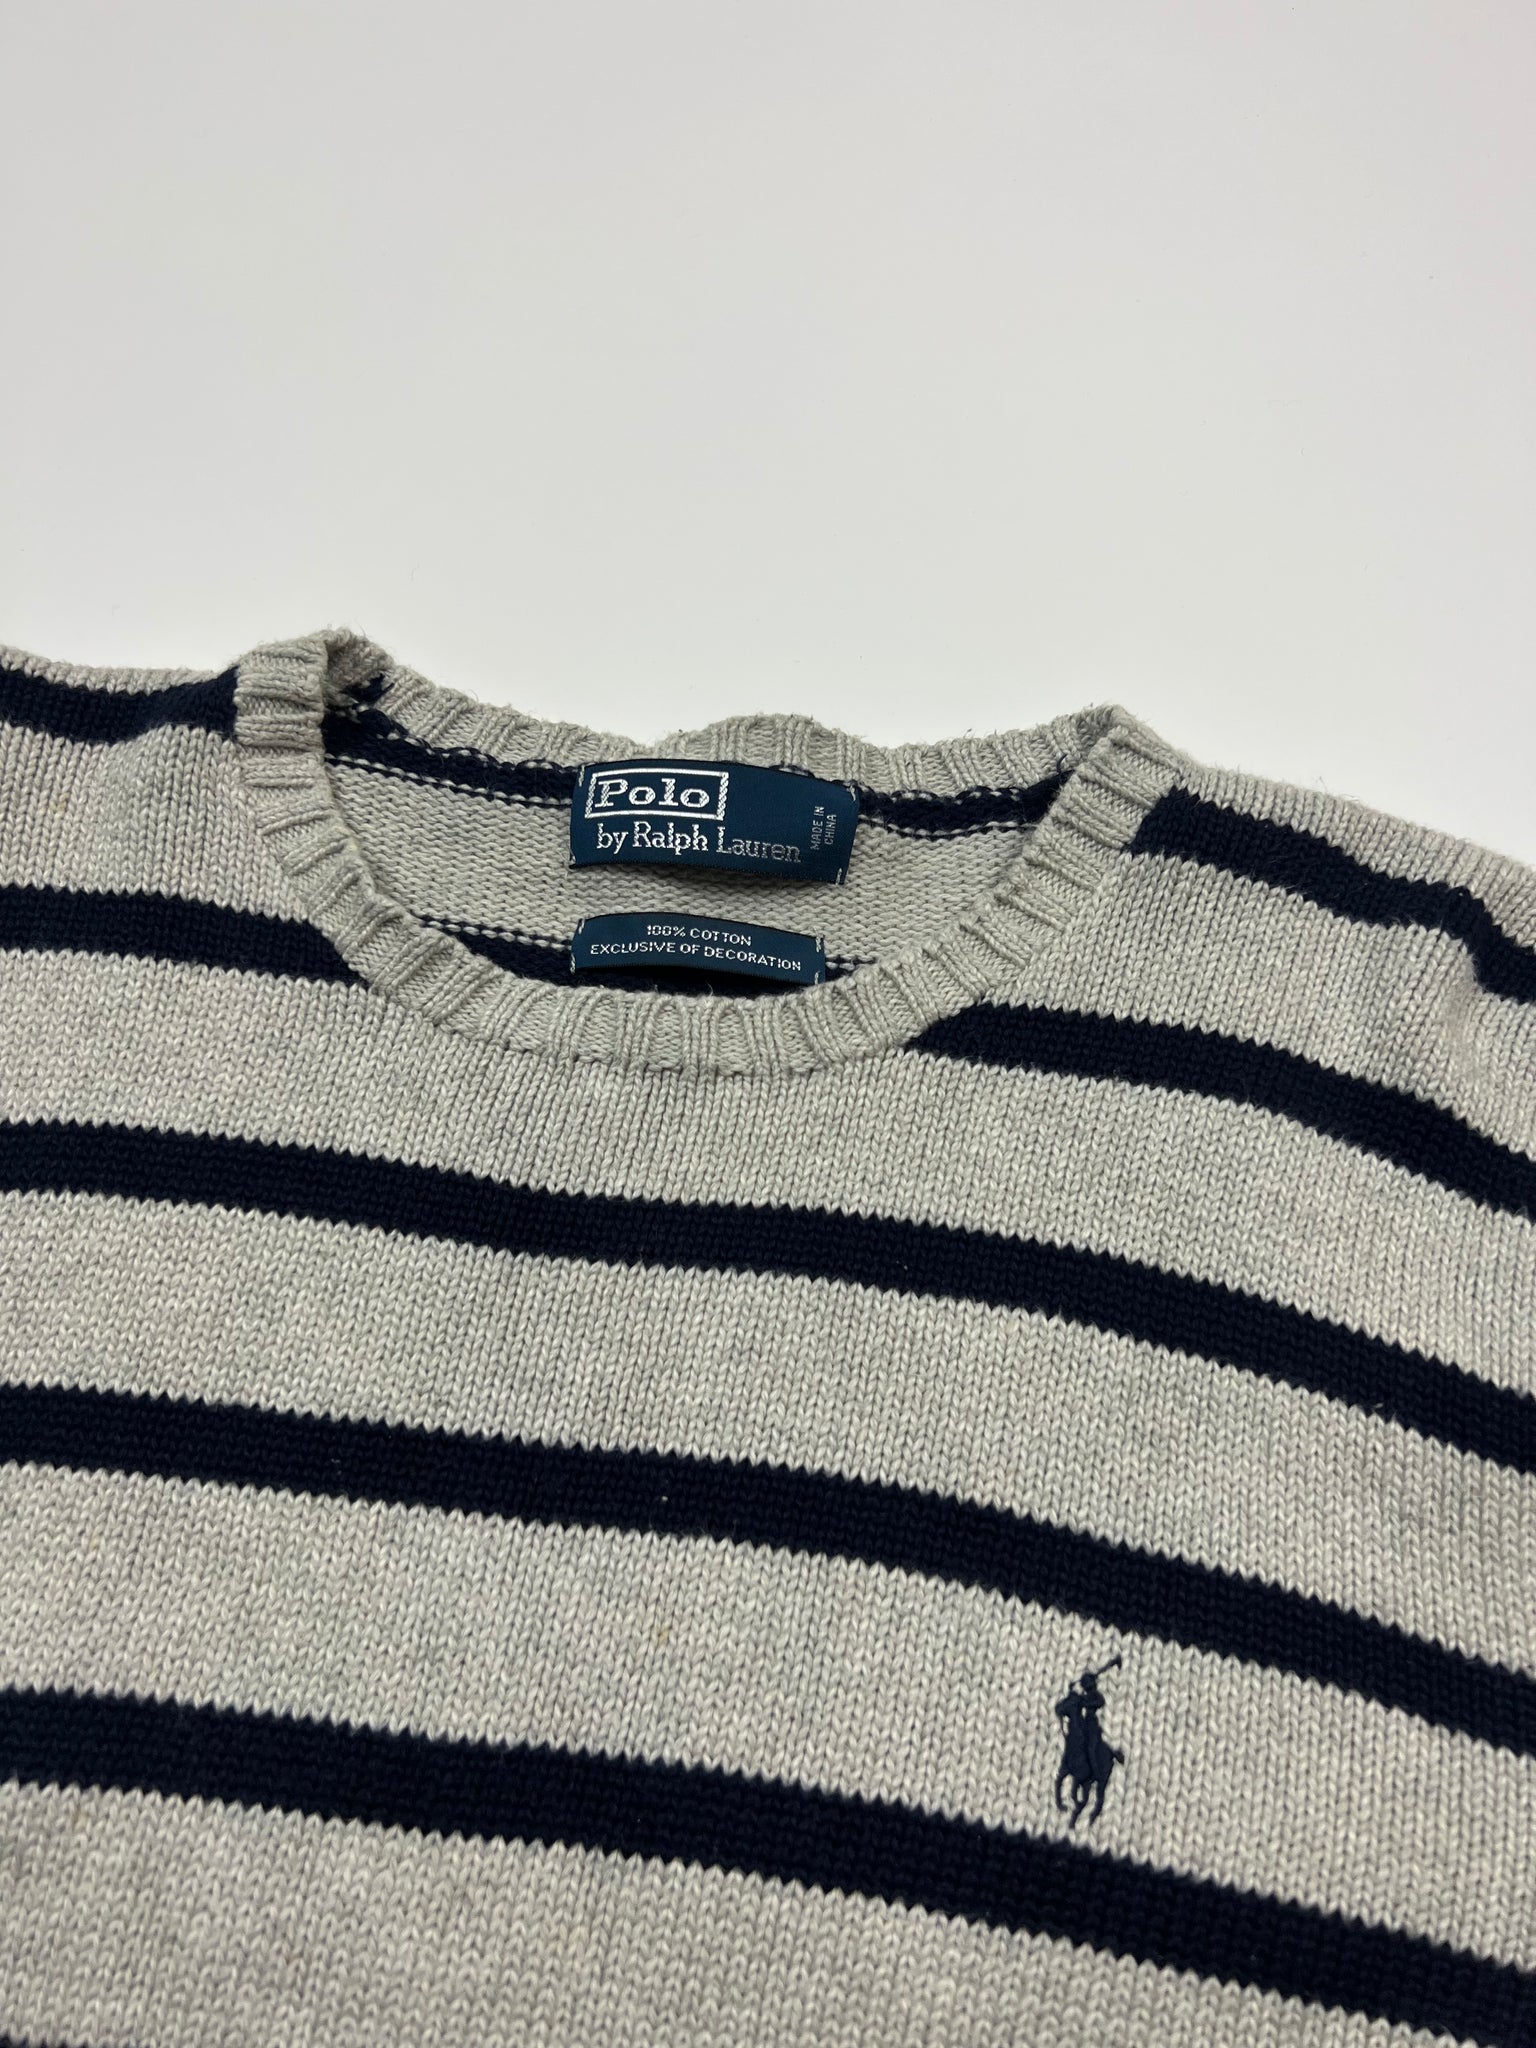 Polo Ralph Lauren Sweater (XL)